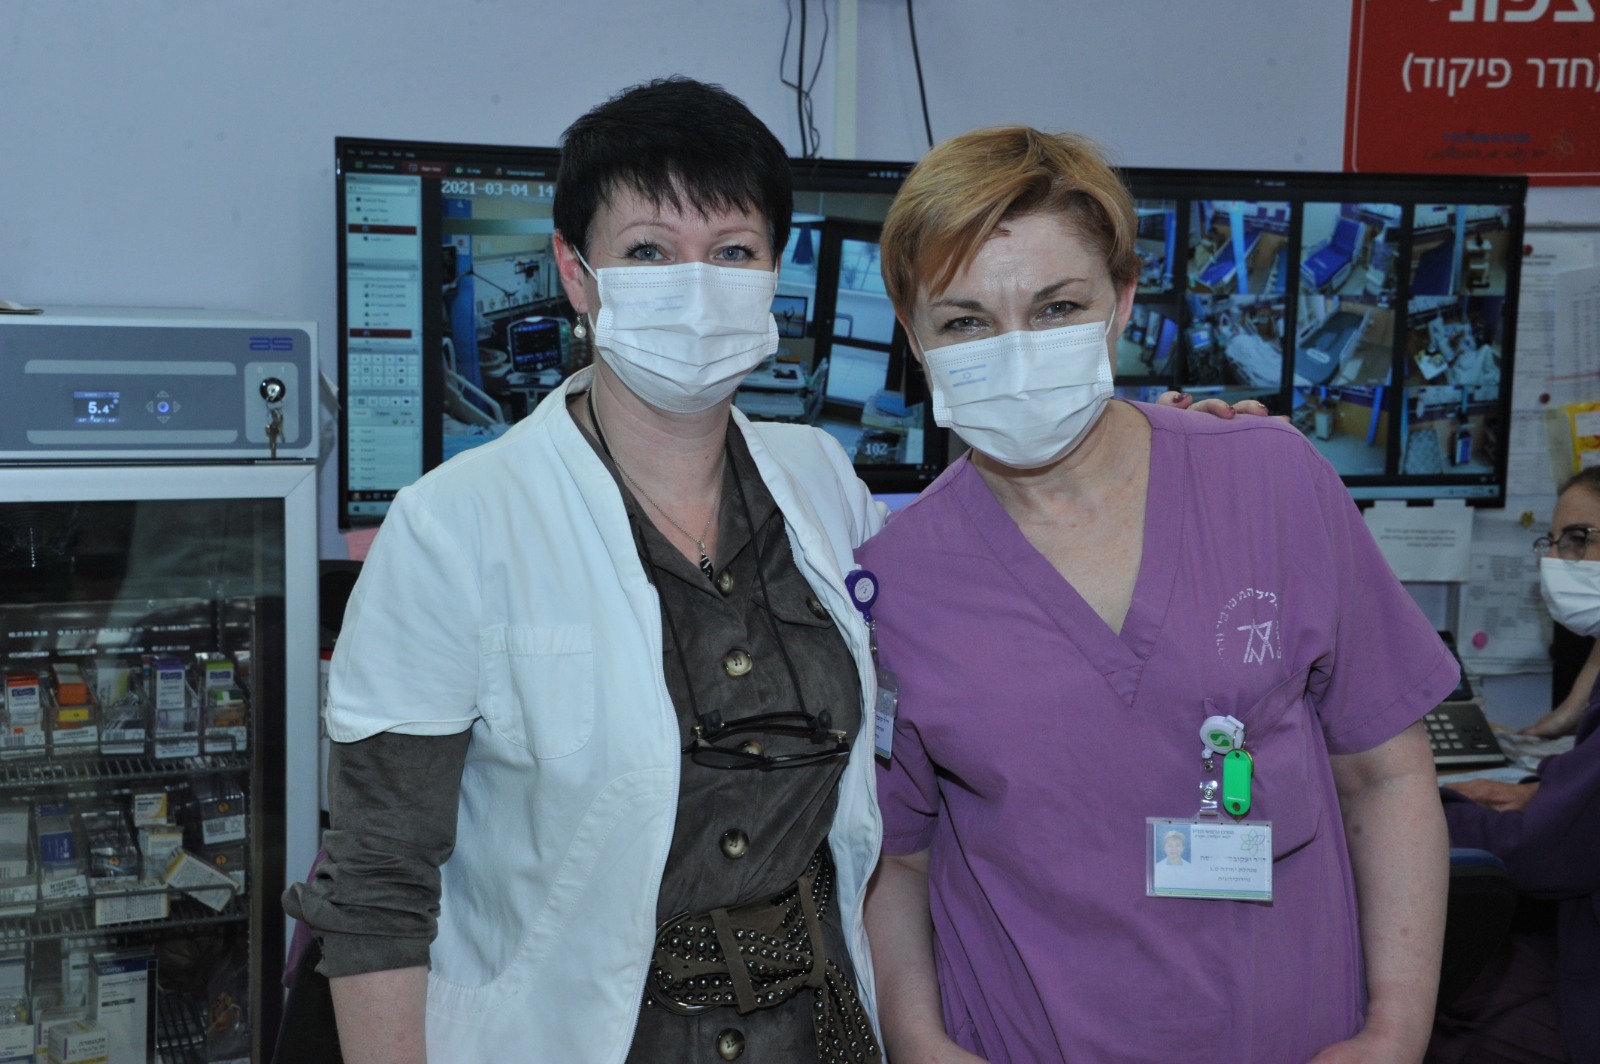 שתי הנשים שמנהלות את מחלקת הקורונה הקשה ביותר במרכז הרפואי לגליל